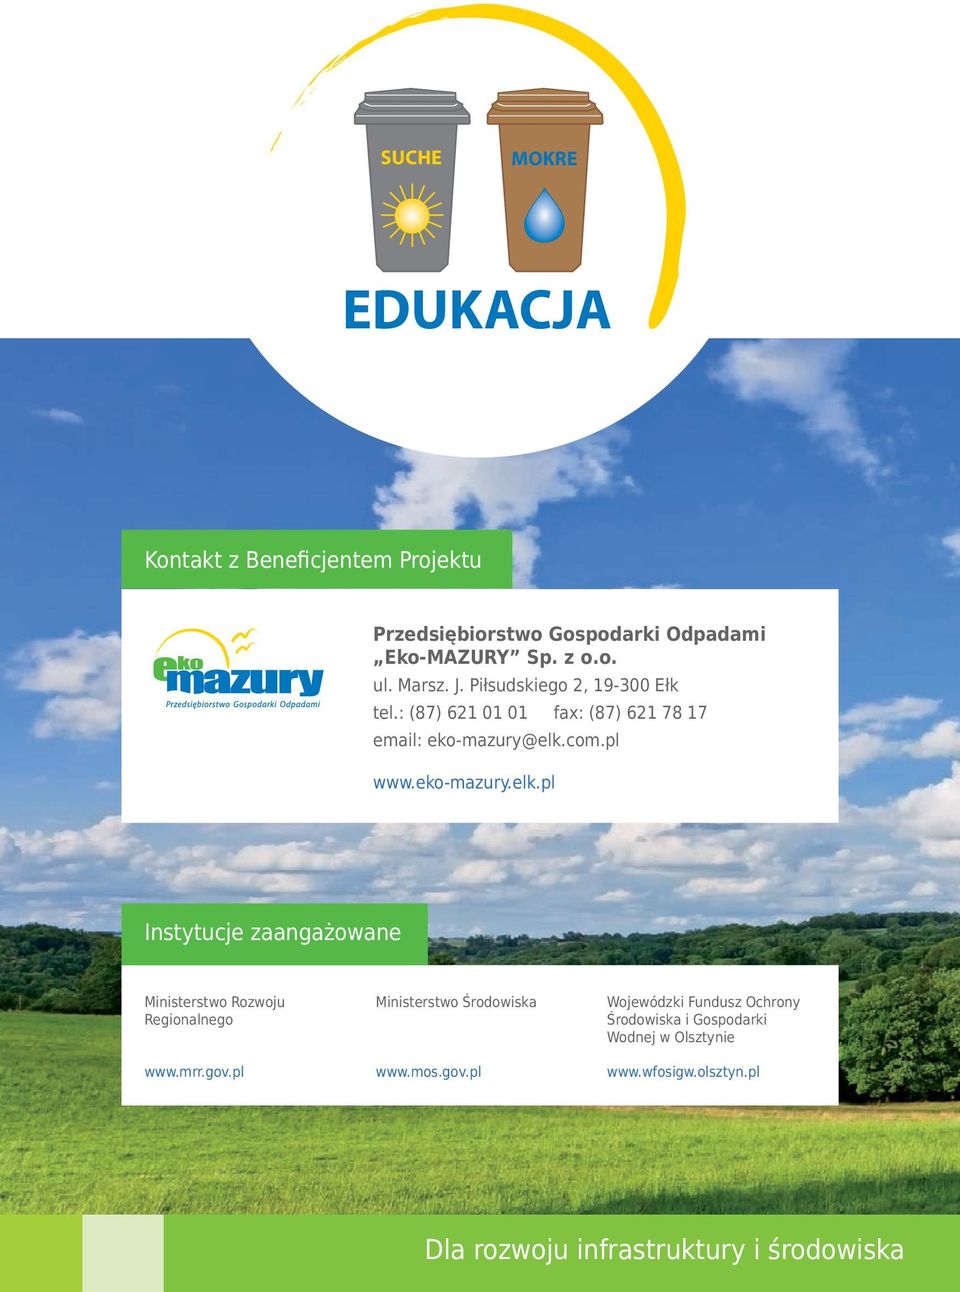 com.pl www.eko-mazury.elk.pl Instytucje zaangażowane Ministerstwo Rozwoju Regionalnego www.mrr.gov.